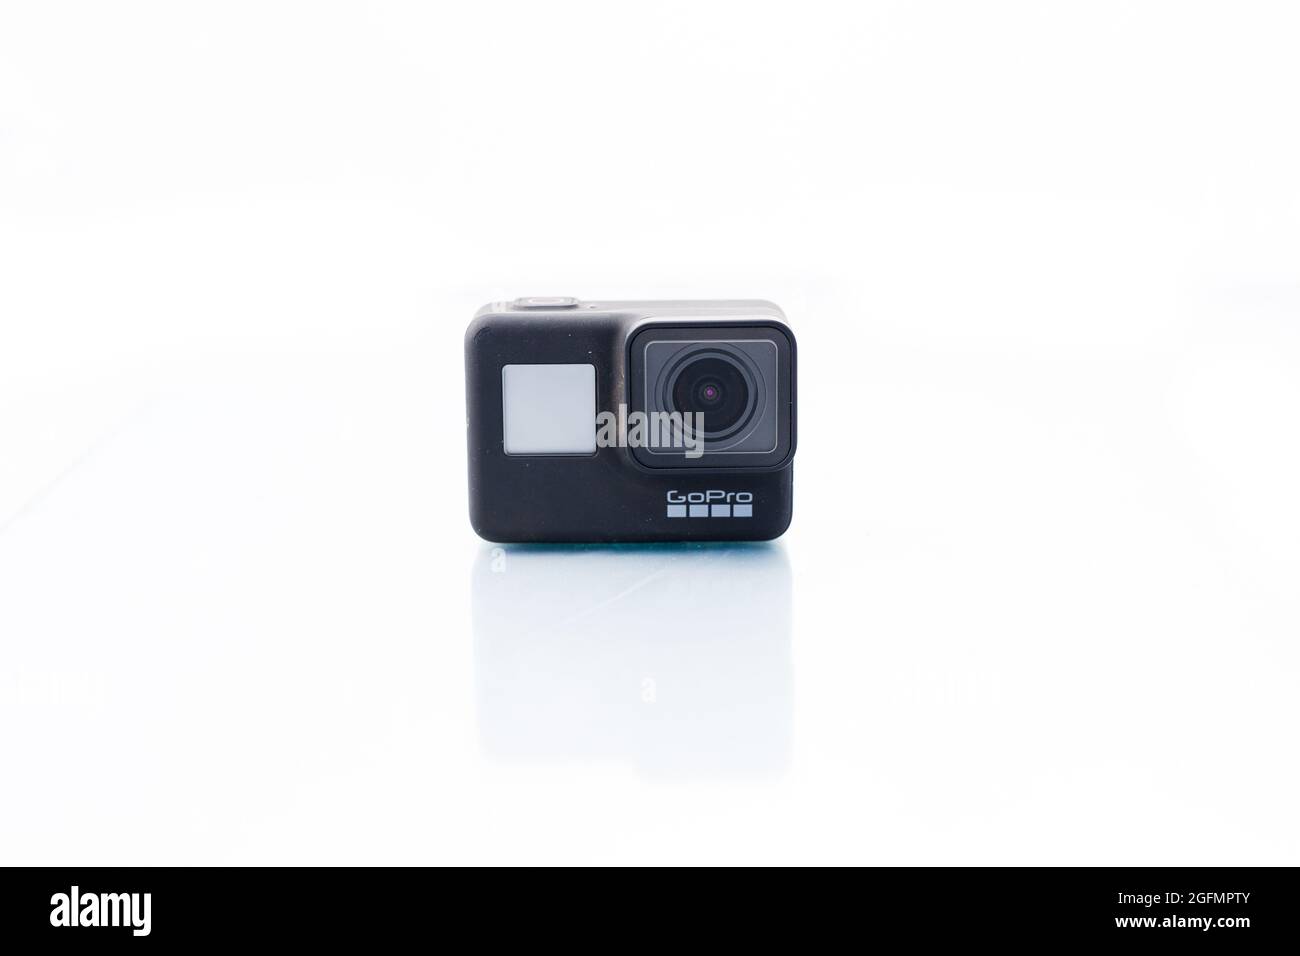 Suffolk, Royaume-Uni juin 01 2020: GoPro Hero 7 Black caméra d'action tourné sur un fond blanc clair et clair. GoPro est une petite caméra embarquée couramment utilisée Banque D'Images